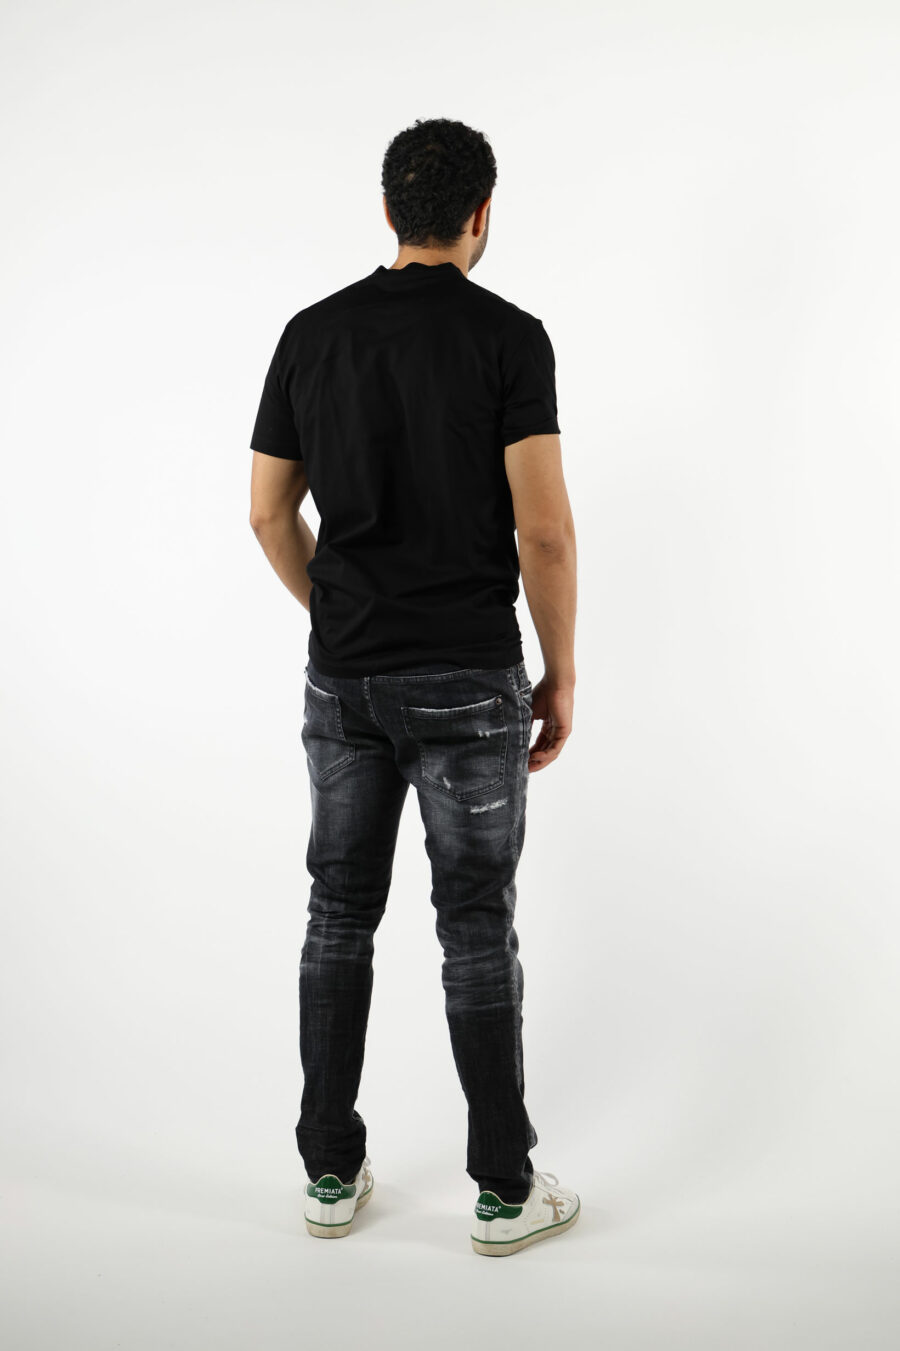 Pantalón vaquero negro "skater jean" con parche y semidesgastado - 111293